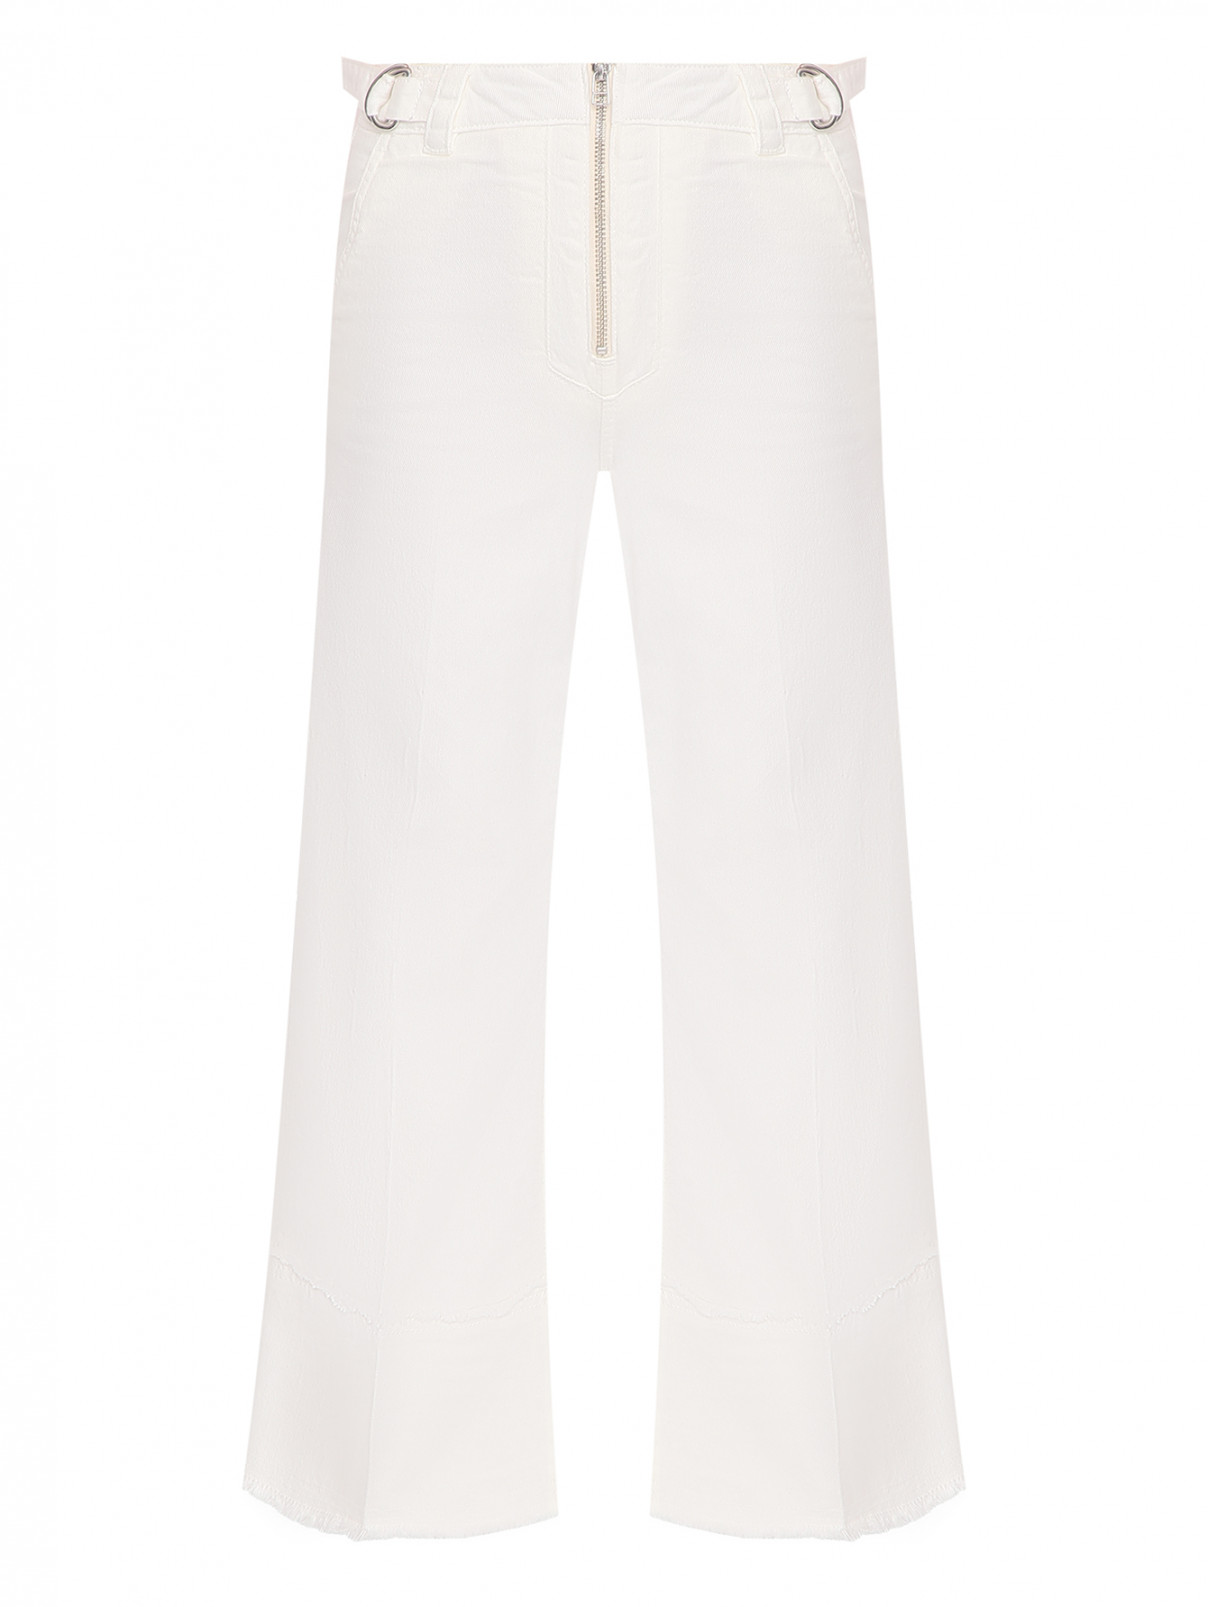 Джинсы-клеш декорированные молнией и вышивкой на кармане Max&Co  –  Общий вид  – Цвет:  Белый